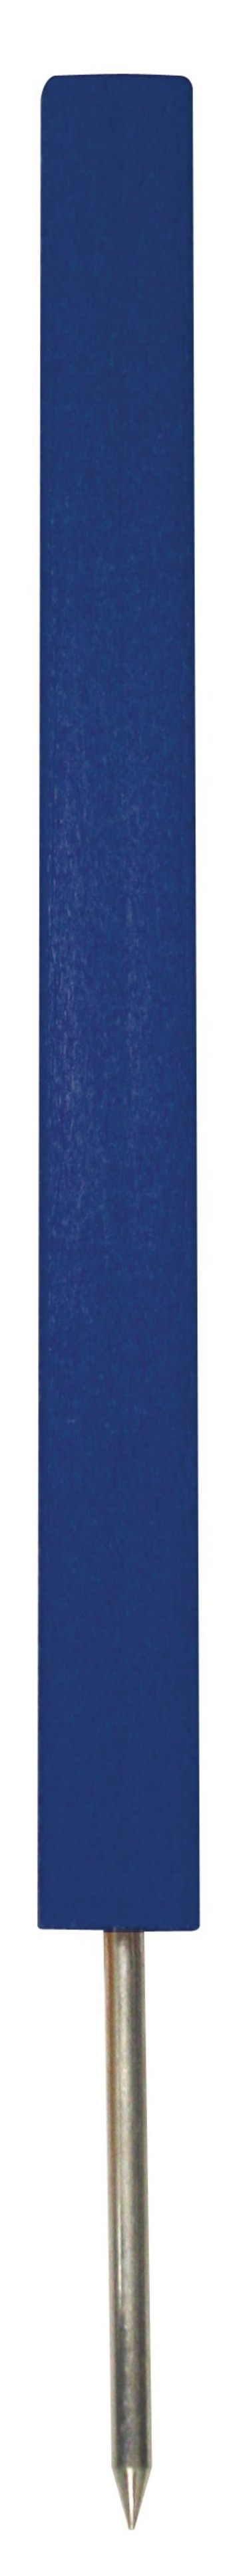 PREMIUM Gefahrenmarker 46 cm mit Spike , blau